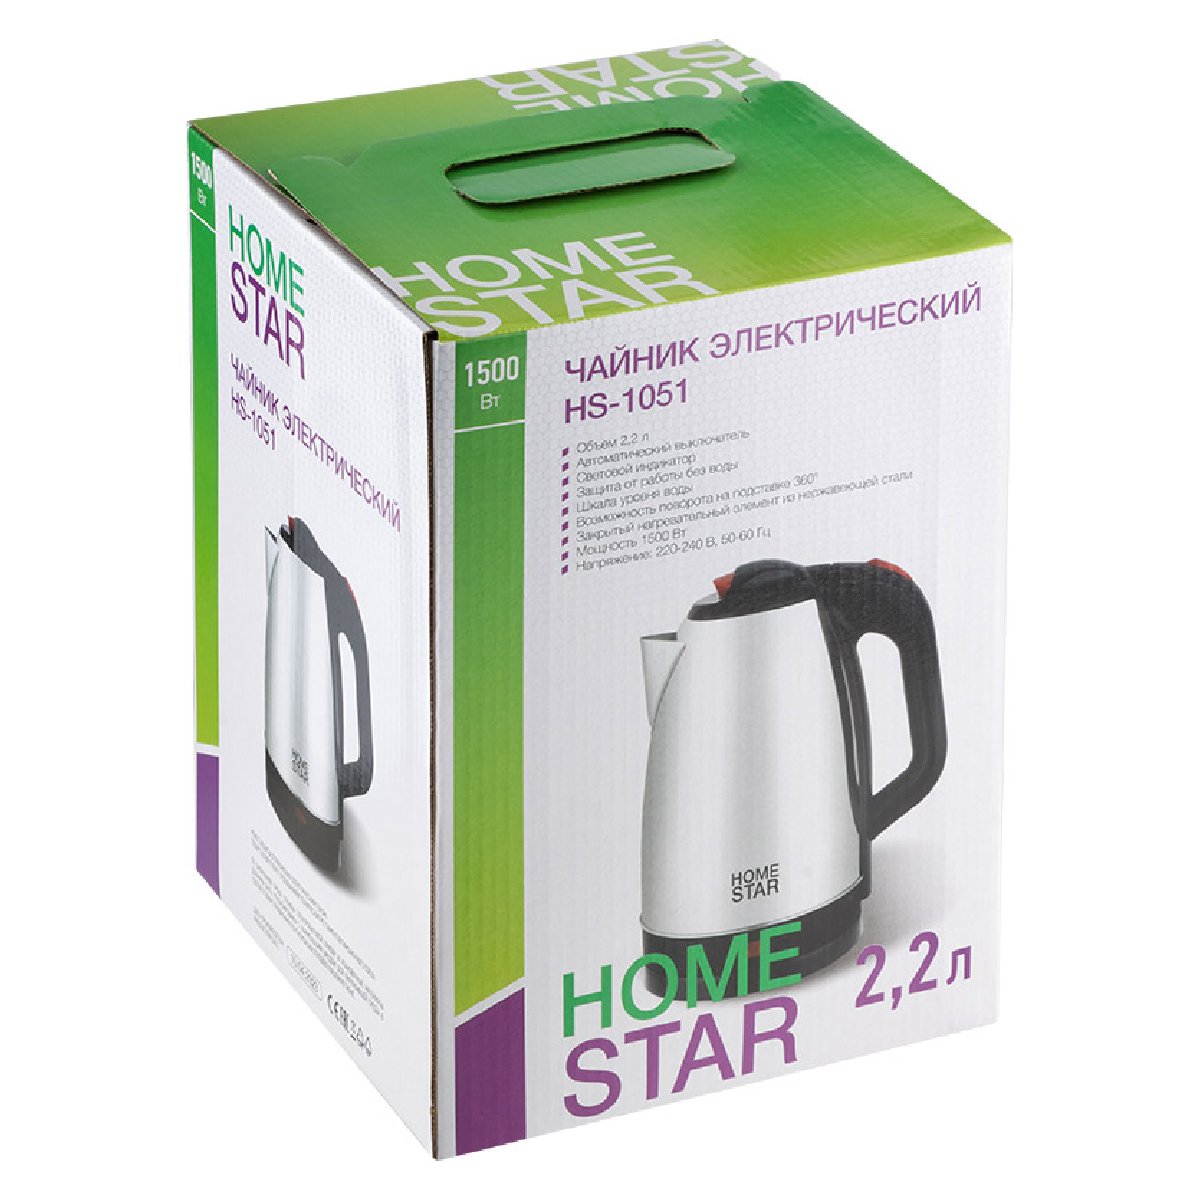 Чайник Homestar HS-1051 (2,2 л) стальной (105836)